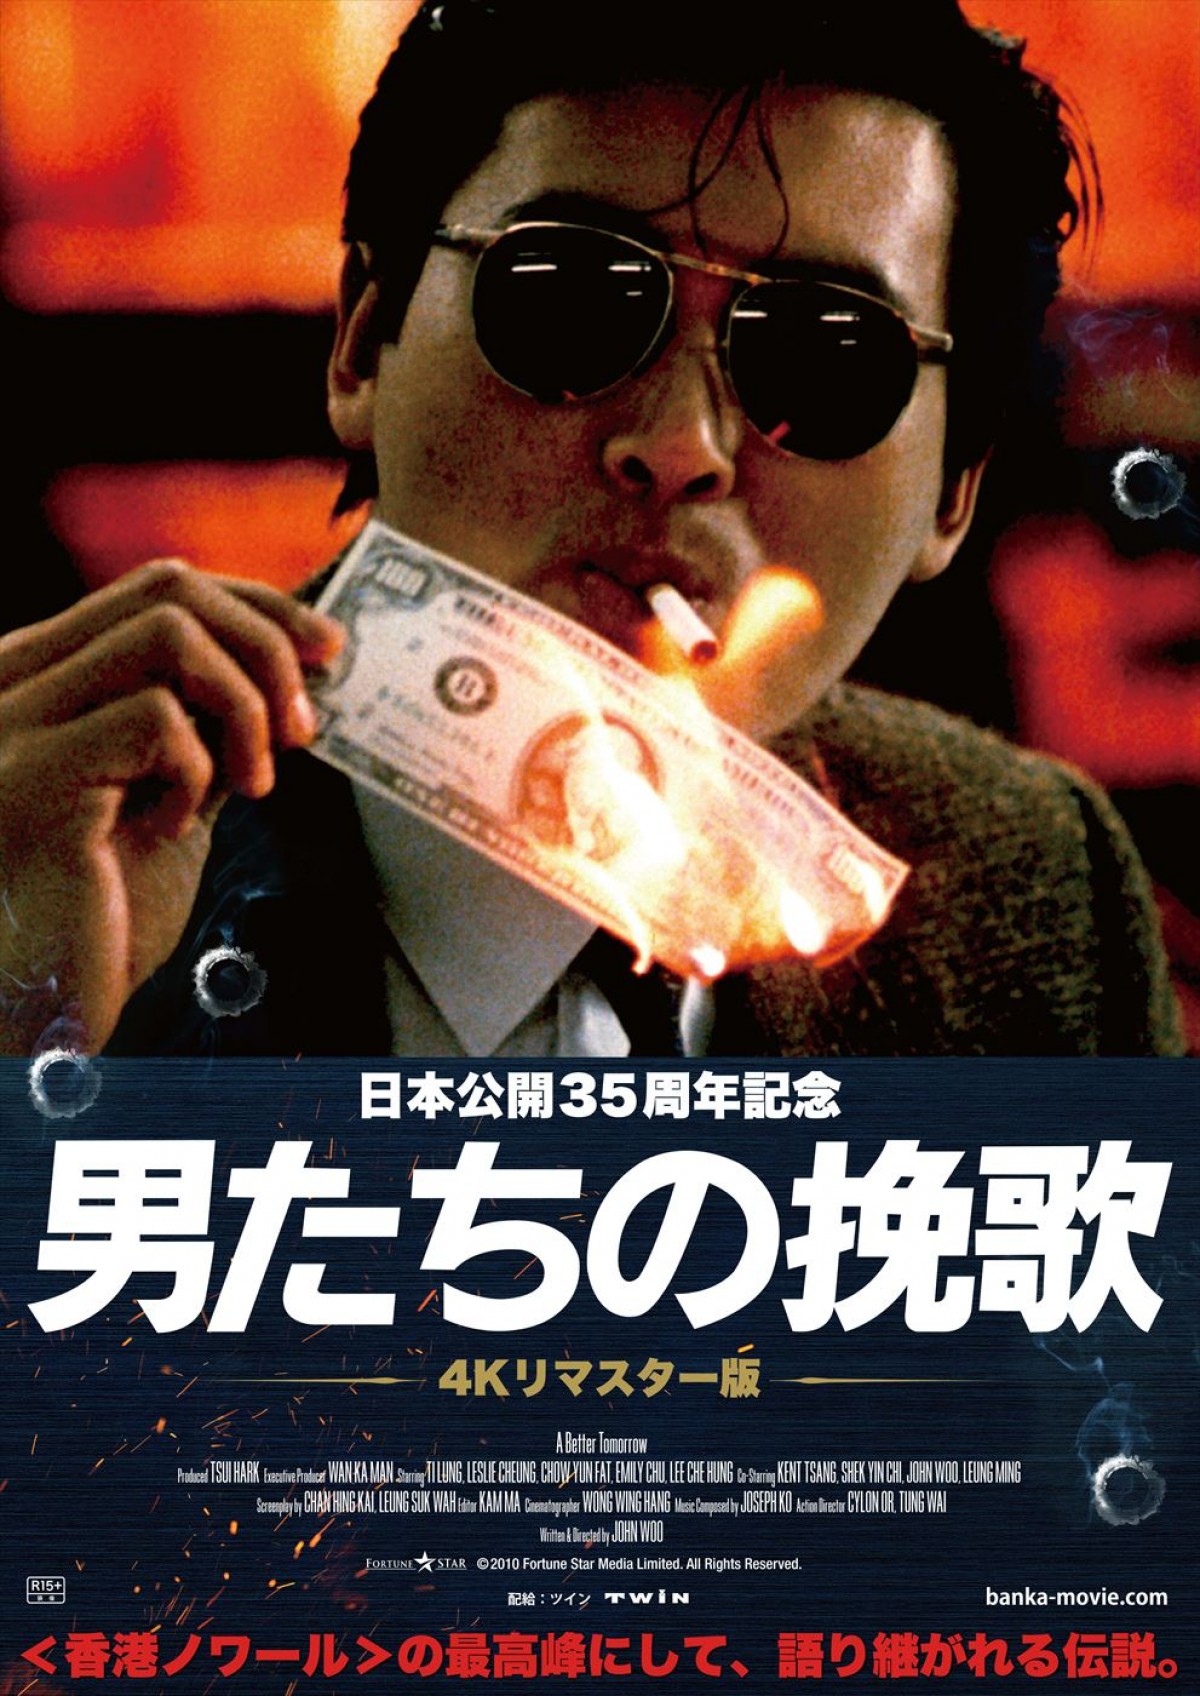 ジョン ウー 男たちの挽歌 4kリマスター版公開決定 香港ノワールの最高峰 22年3月6日 映画 ニュース クランクイン